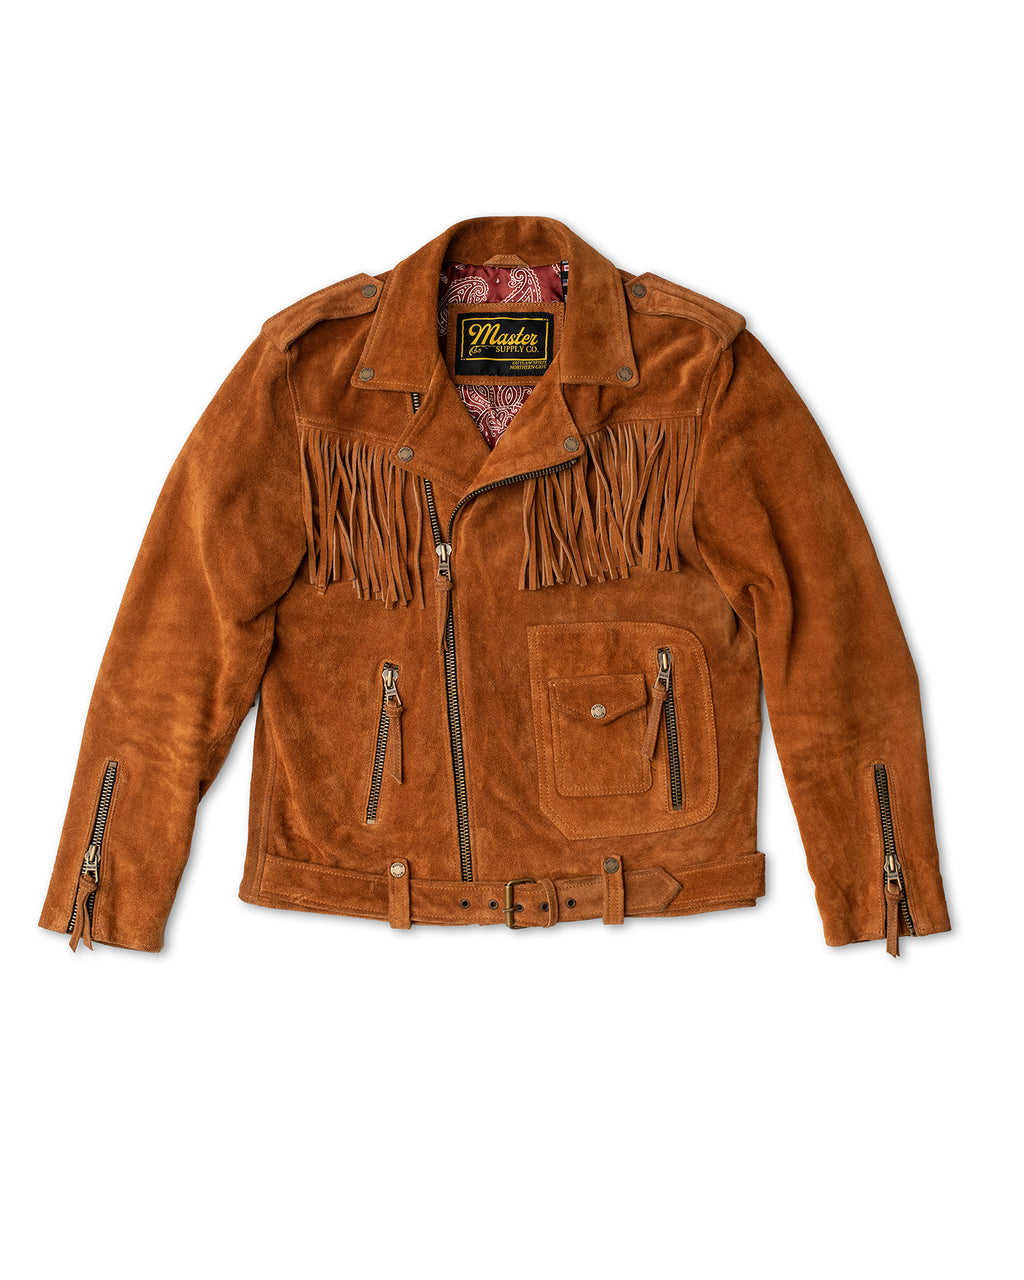 Shop Ranger Fringe Leather Jacket | Master Supply Co. Us/S